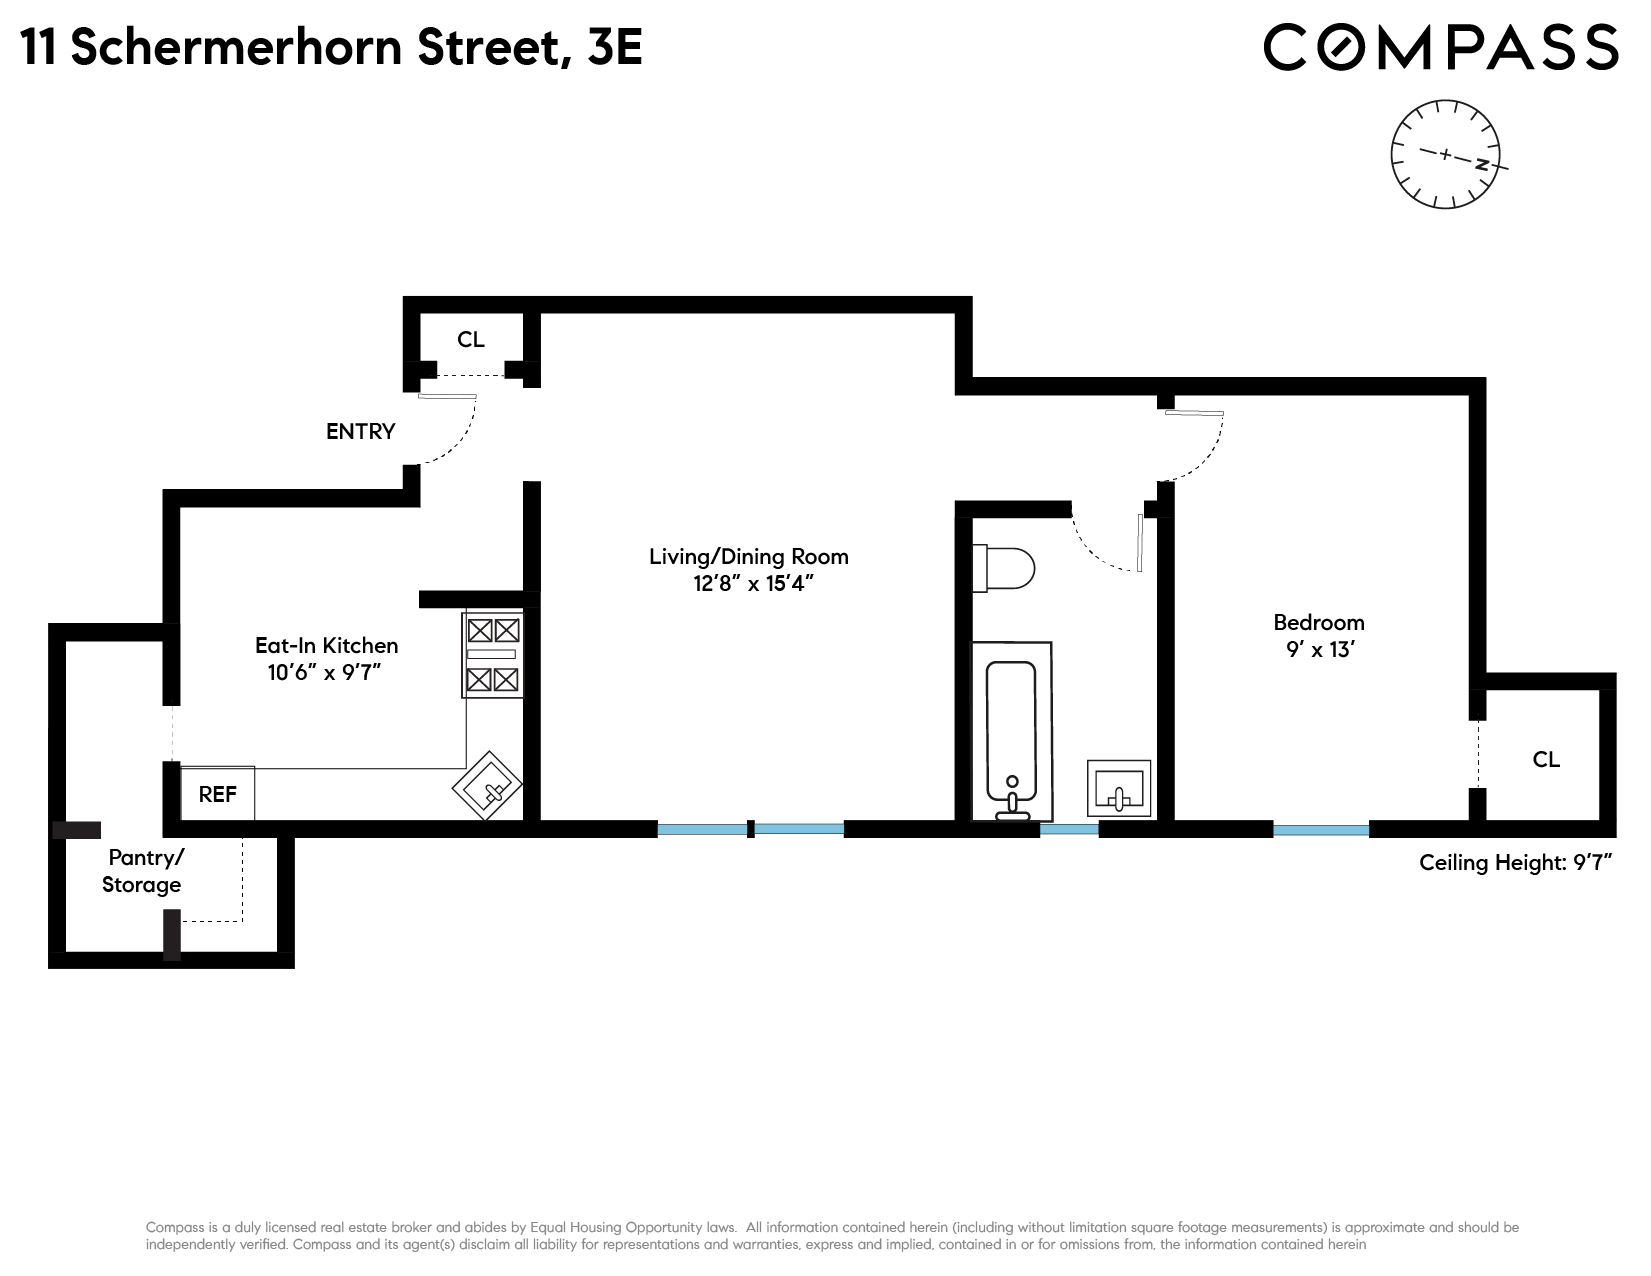 Floorplan for 11 Schermerhorn Street, 3E